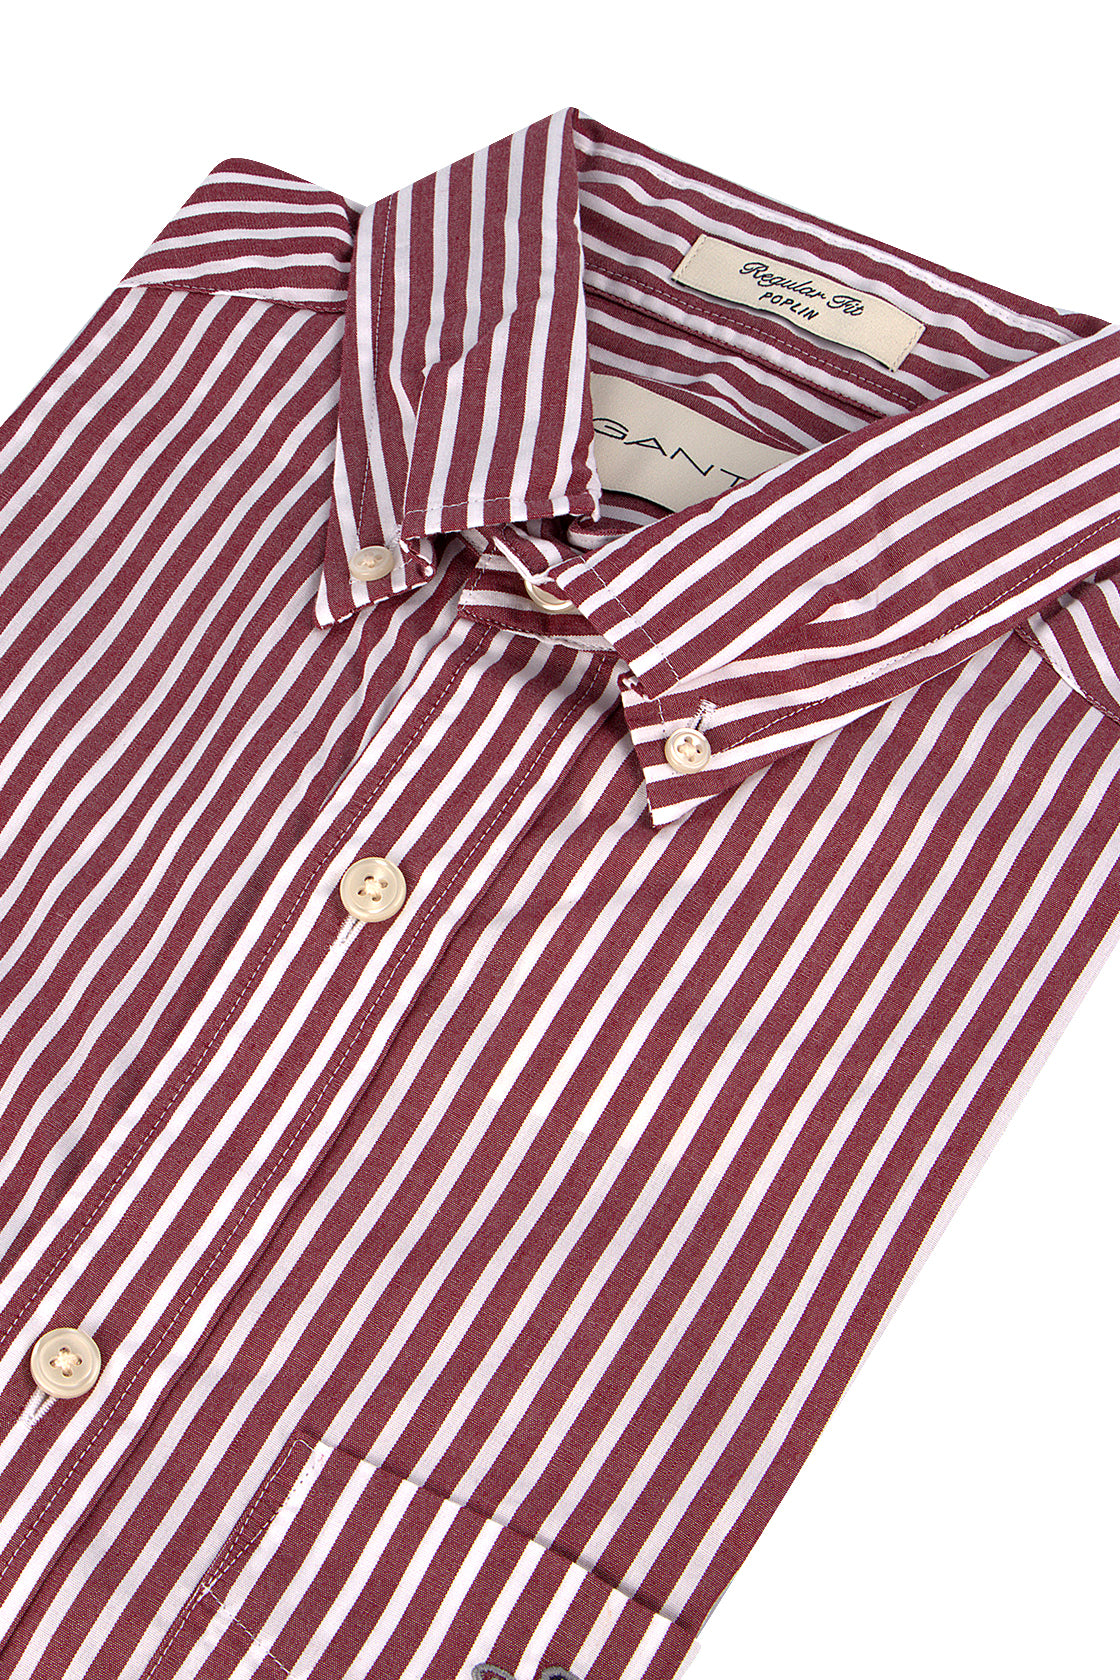 Gant Poplin Stripe LS Shirt Plumped Red